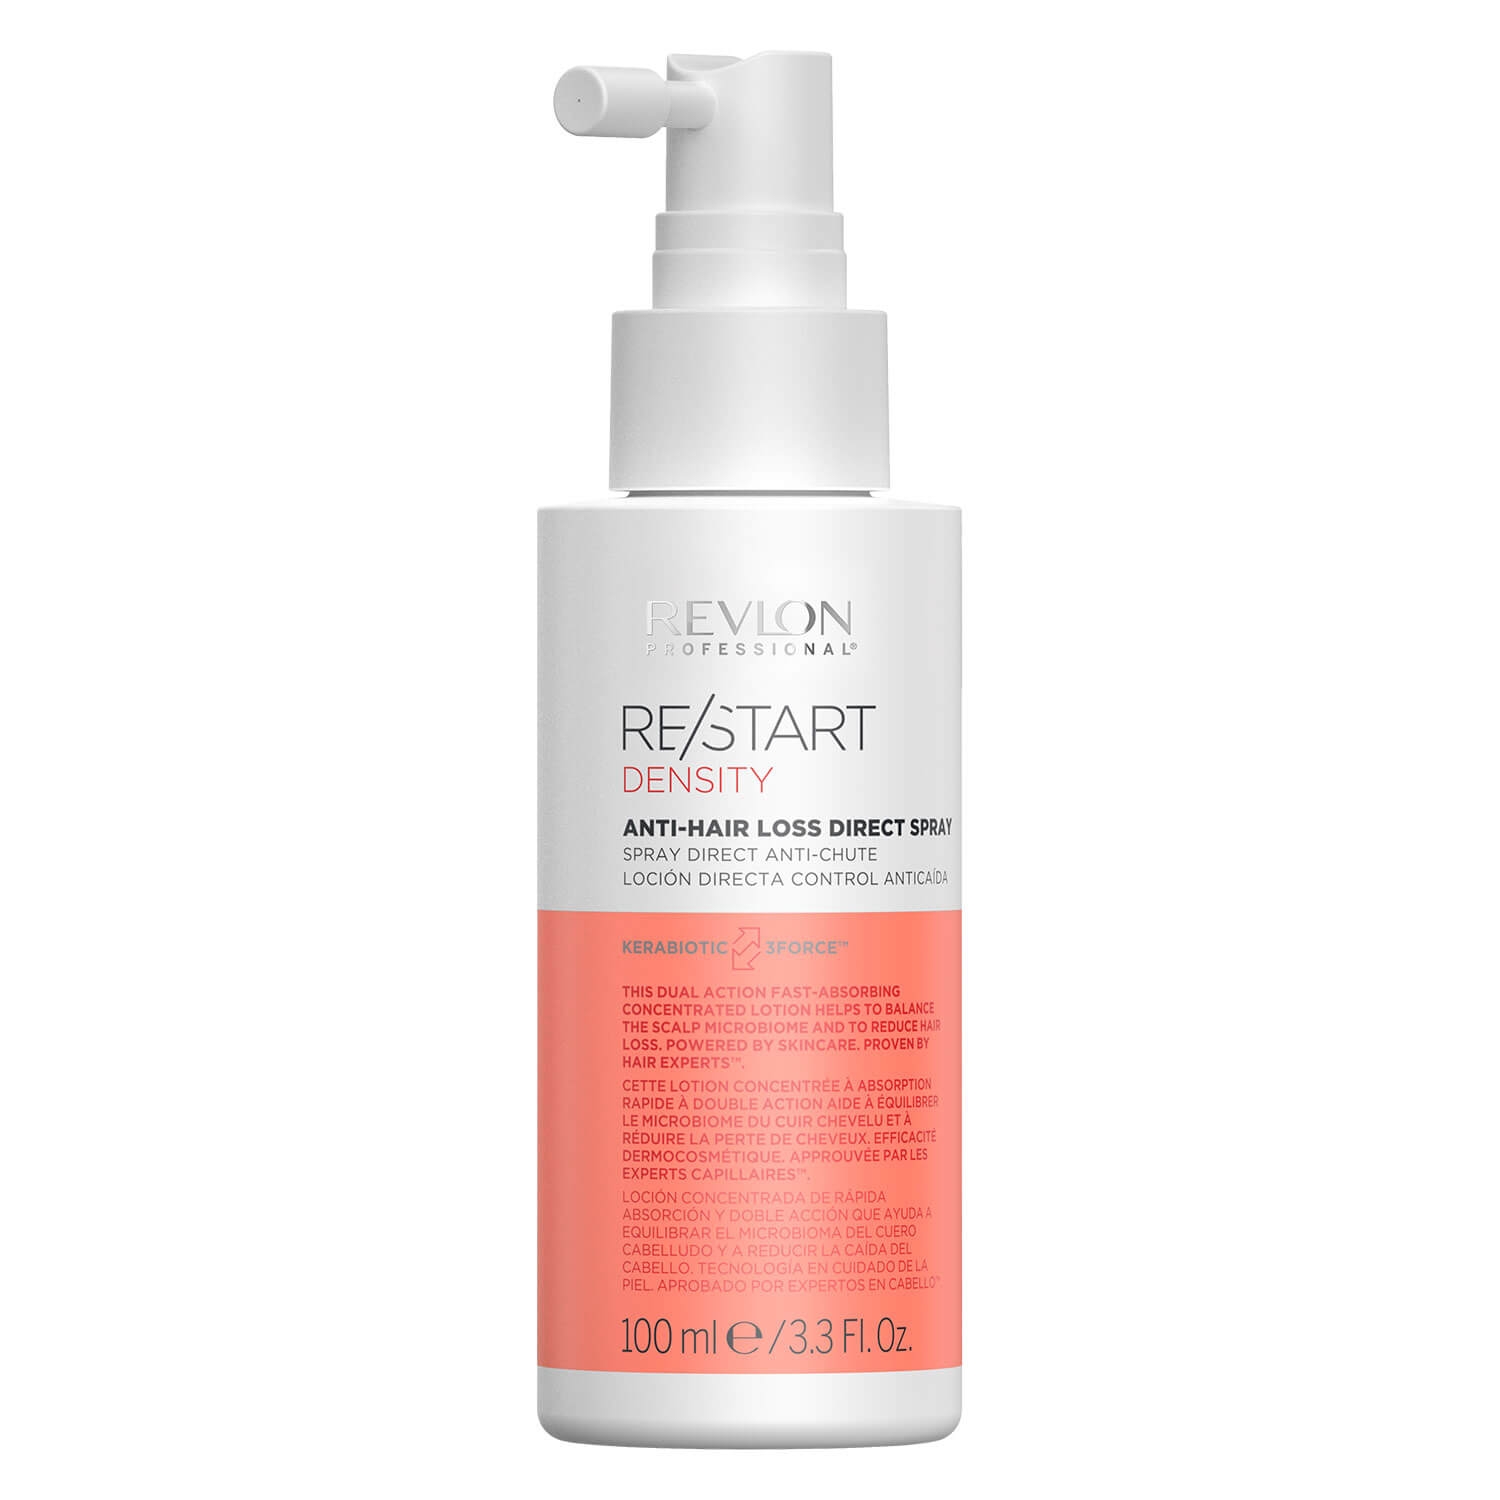 Produktbild von RE/START DENSITY - Anti-Hair Loss Direct Spray